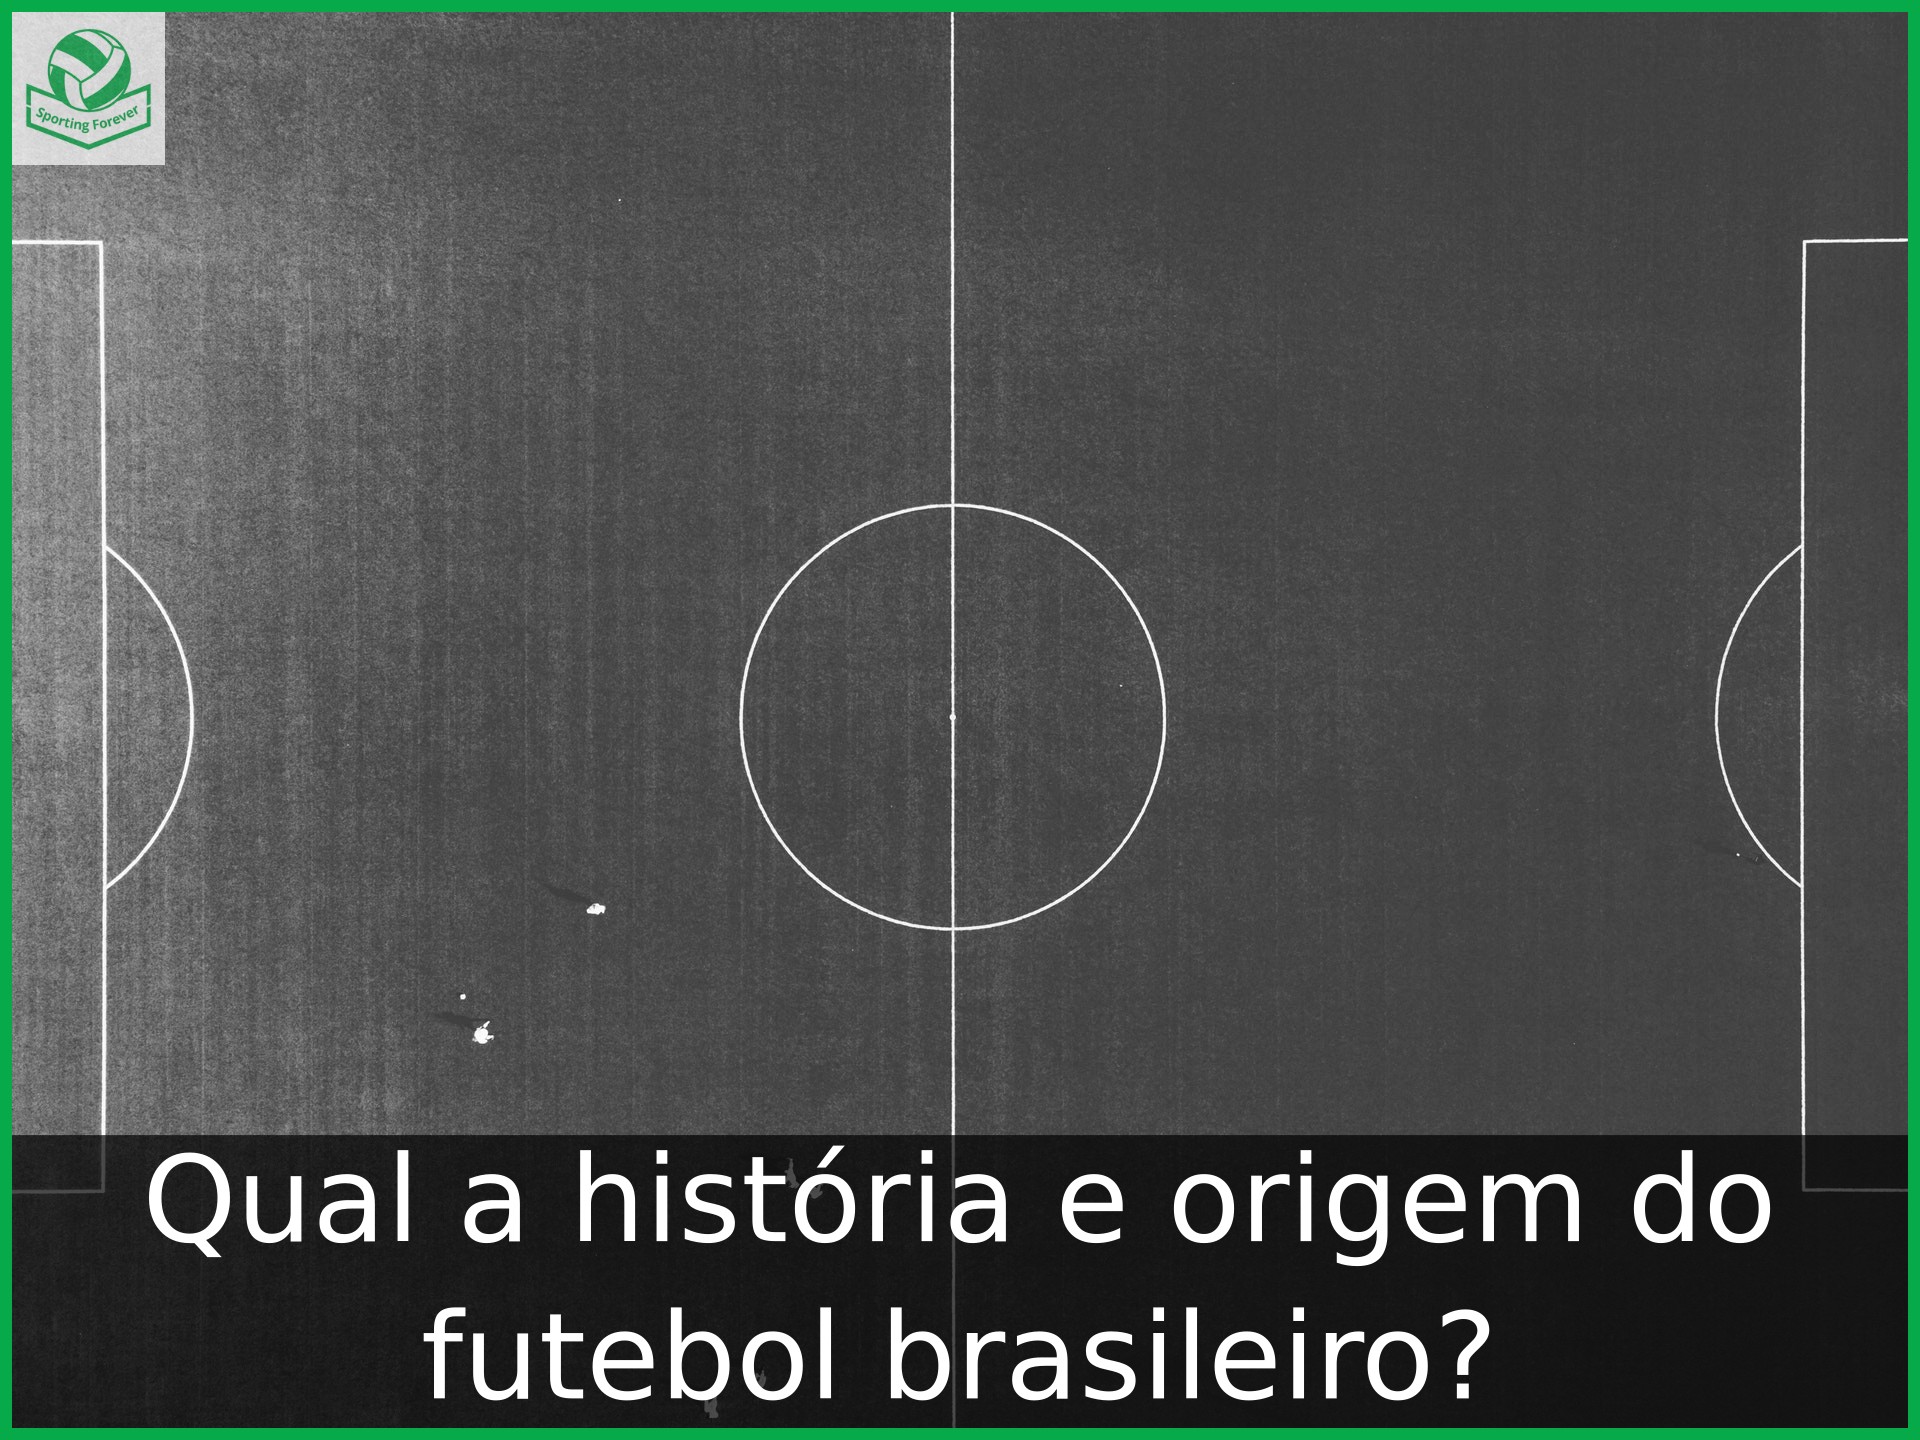 Qual a história e origem do futebol brasileiro?